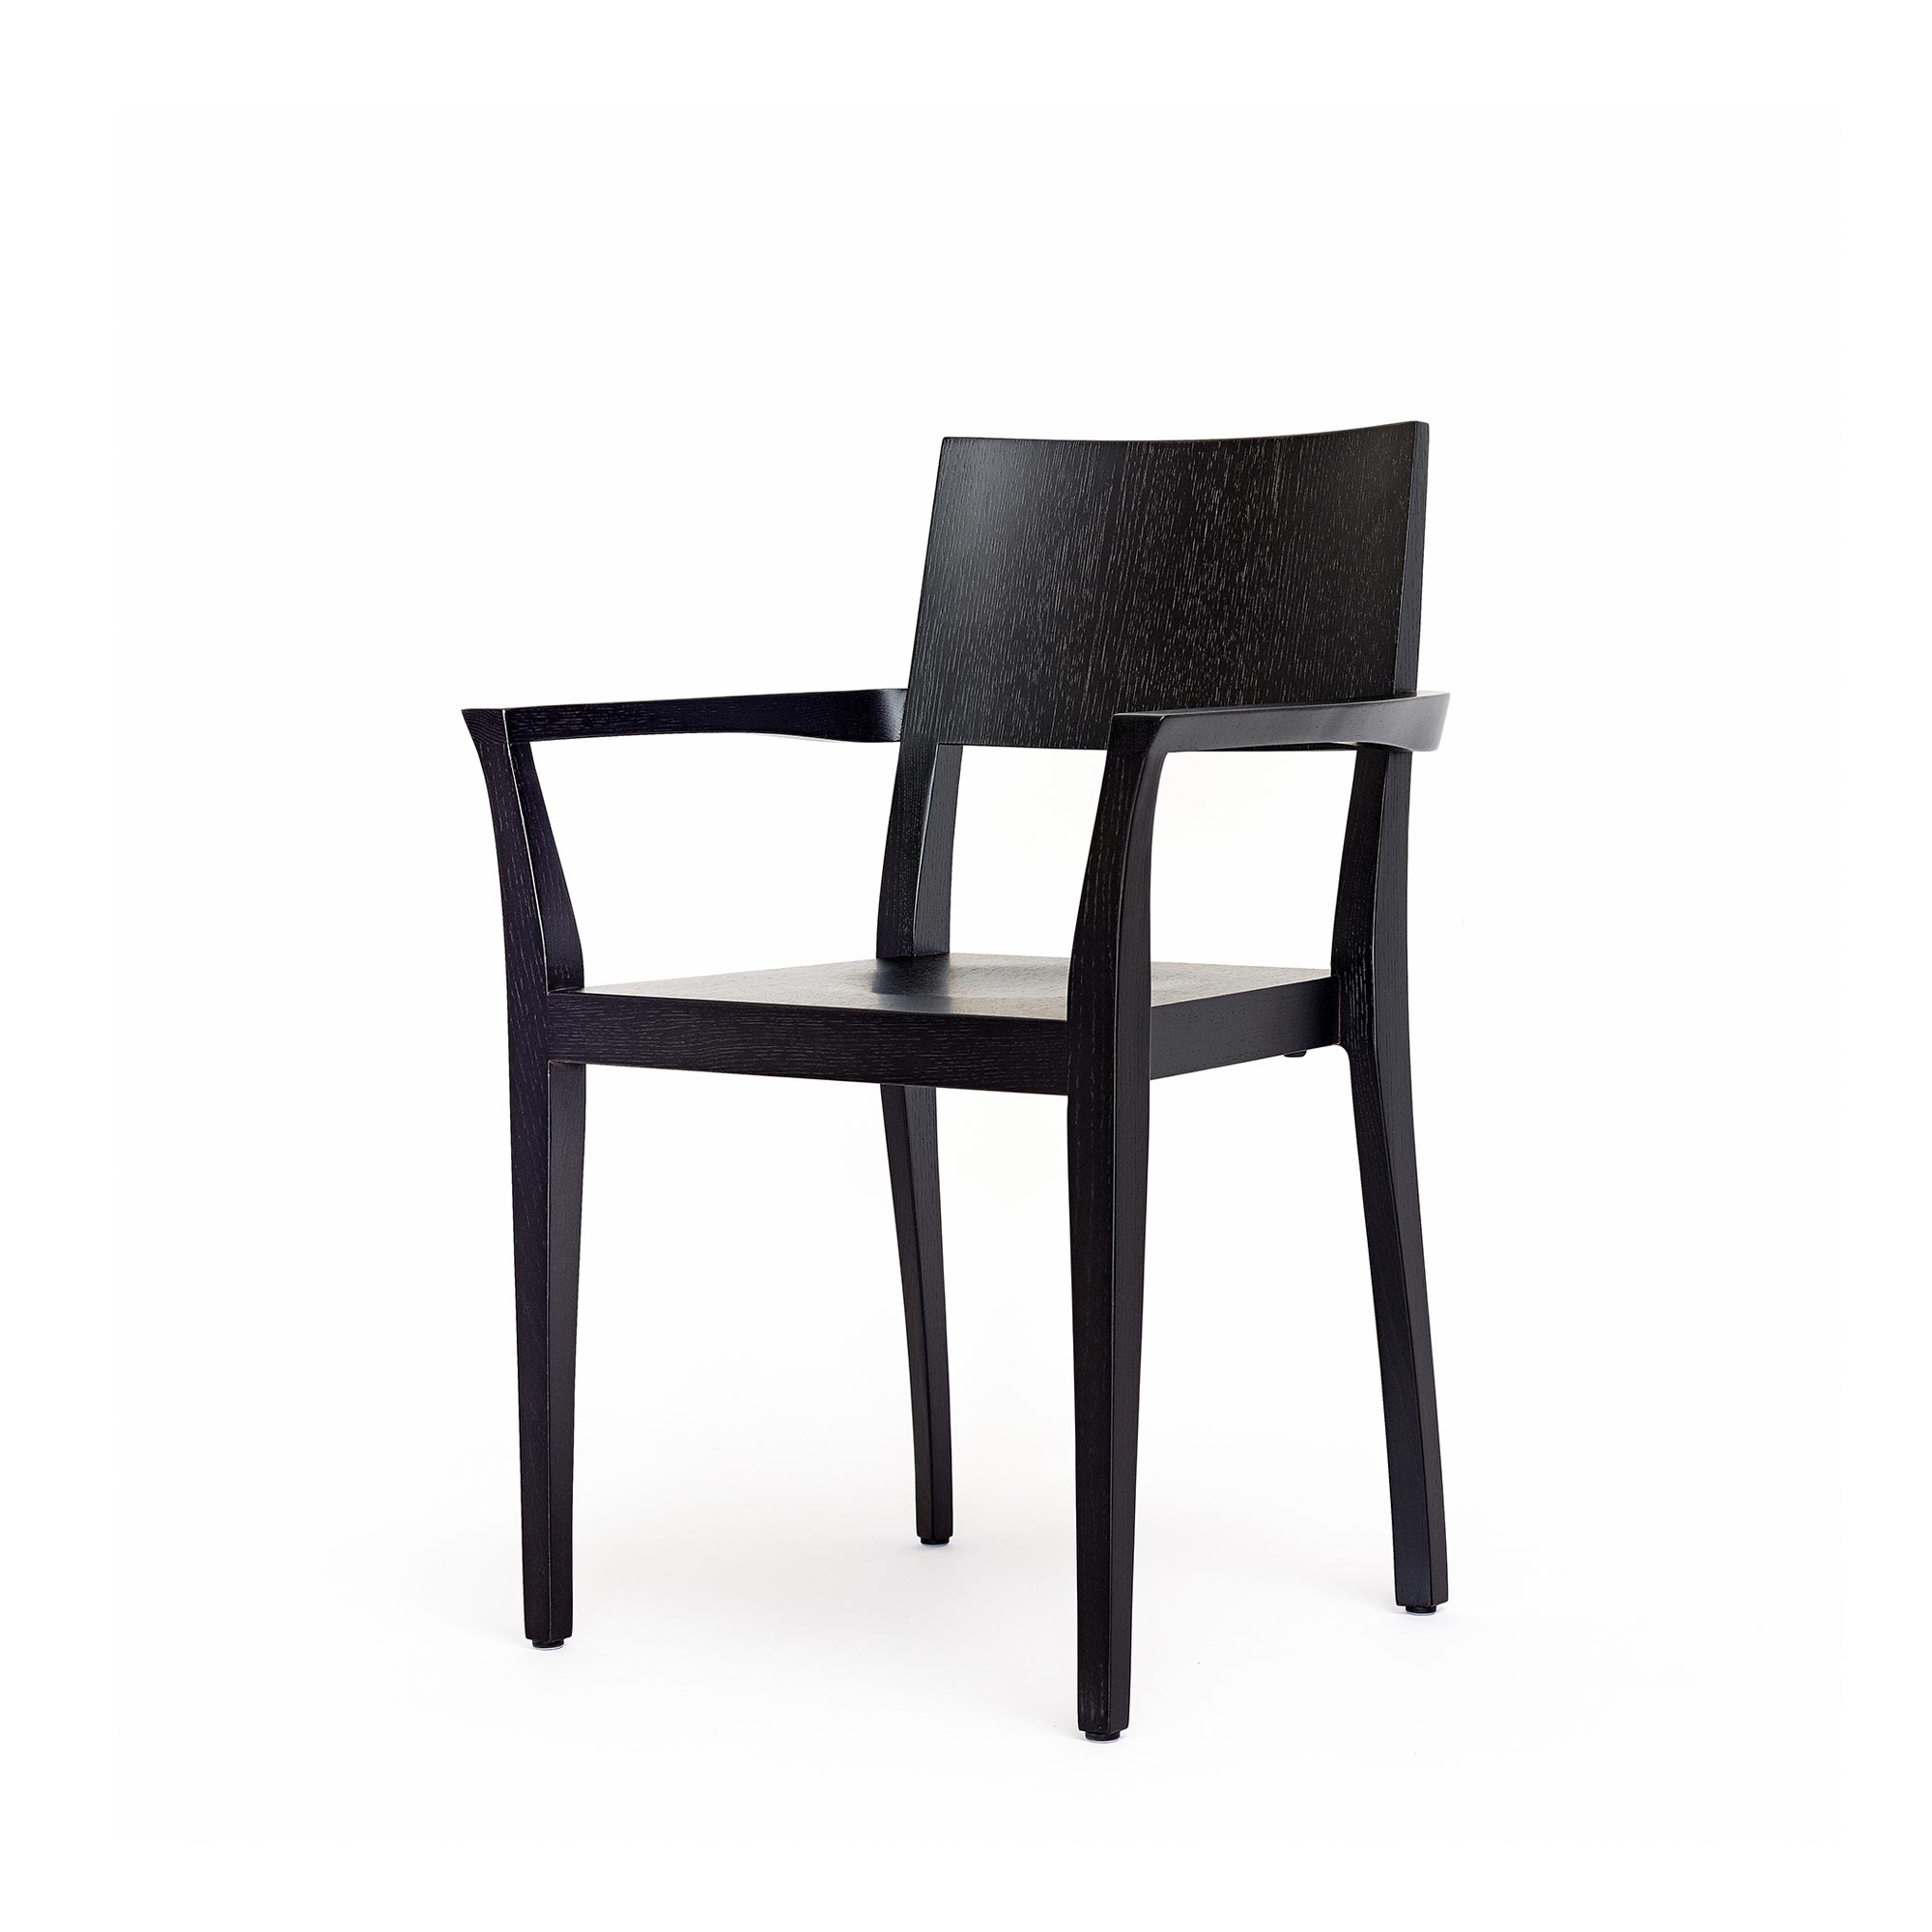 Flankenschnitt-Stuhl image 2